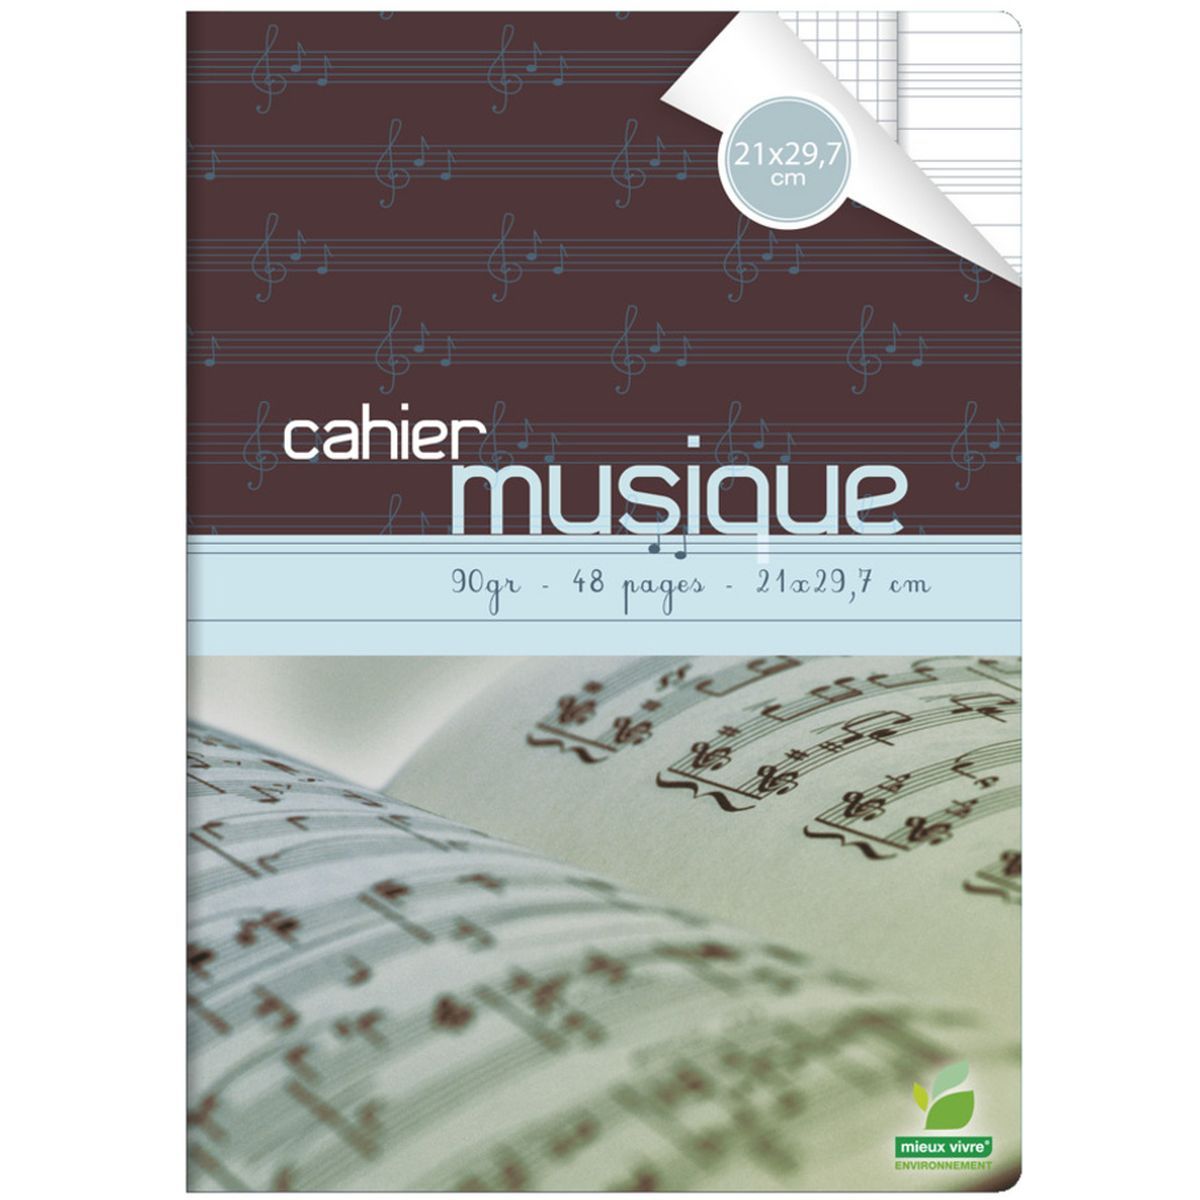 Cahier de Musique - Petits carreaux + pages de 12 portées 